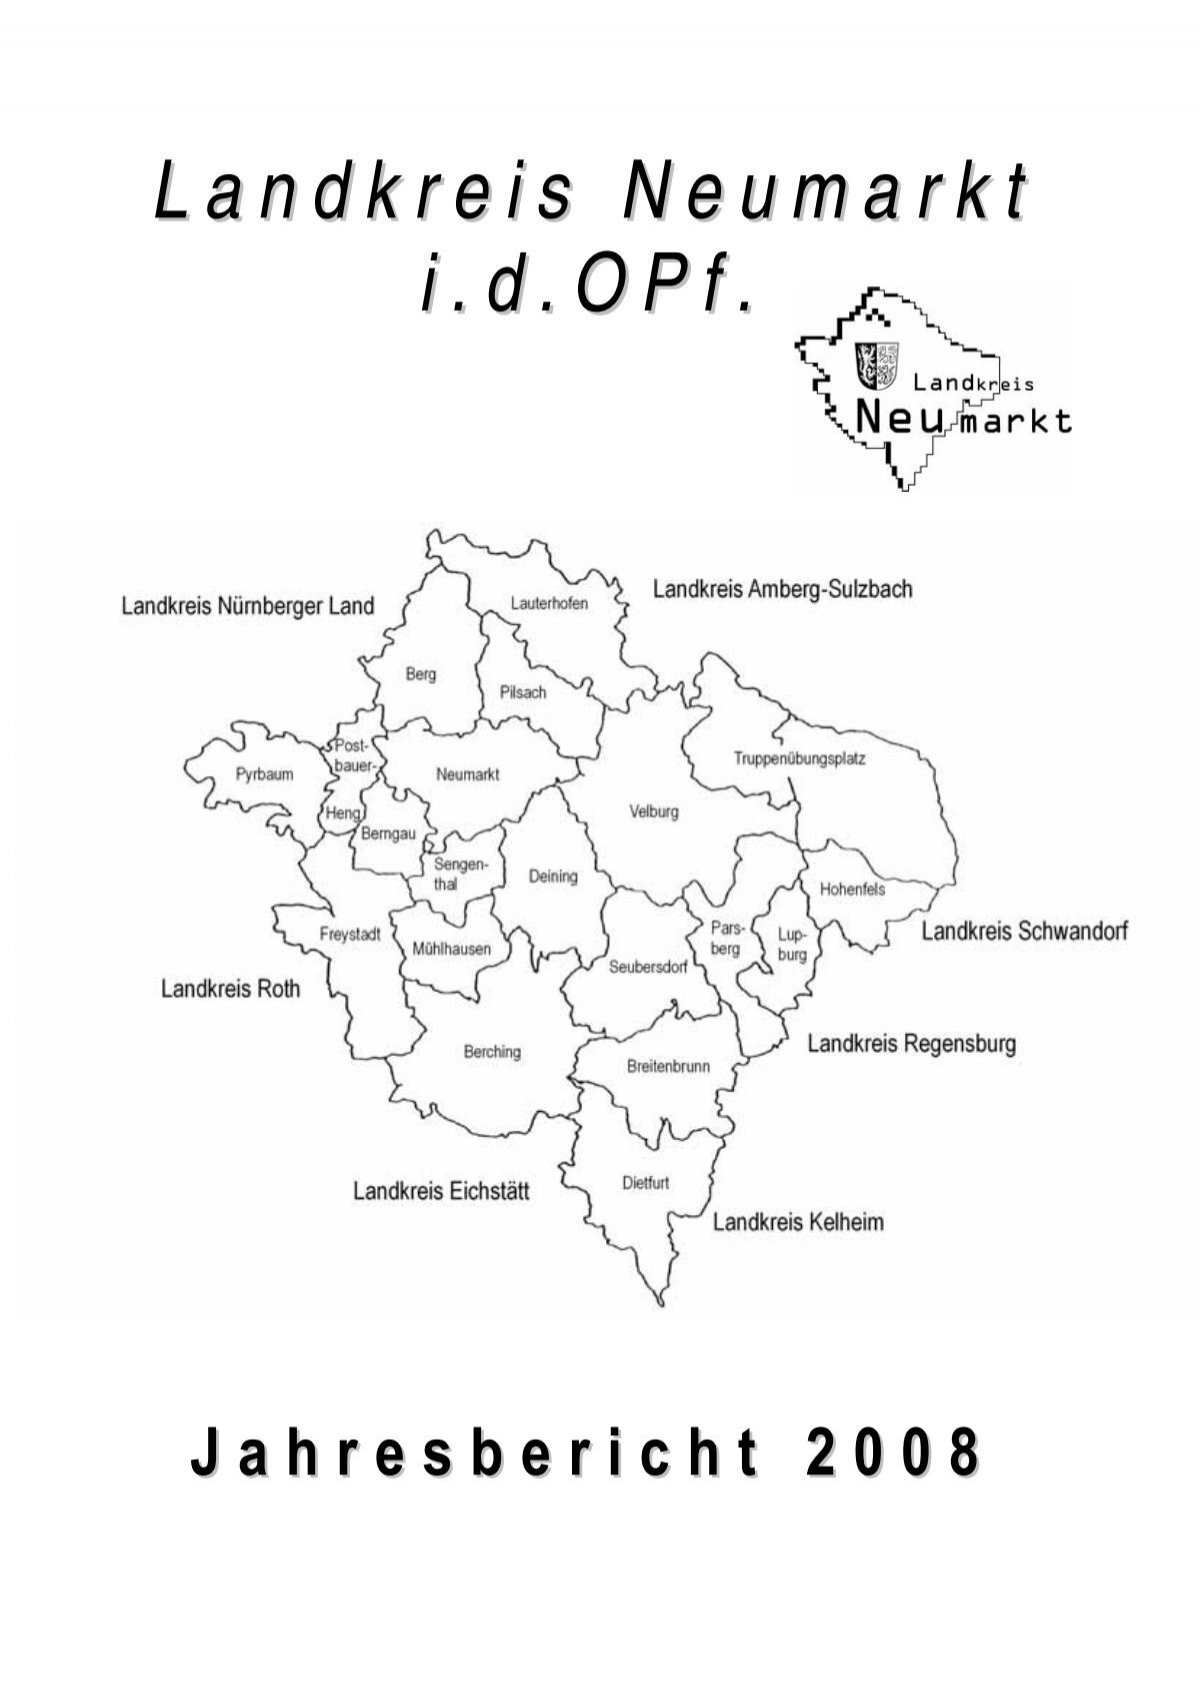 Jahresbericht 2008 Landkreis Neumarkt